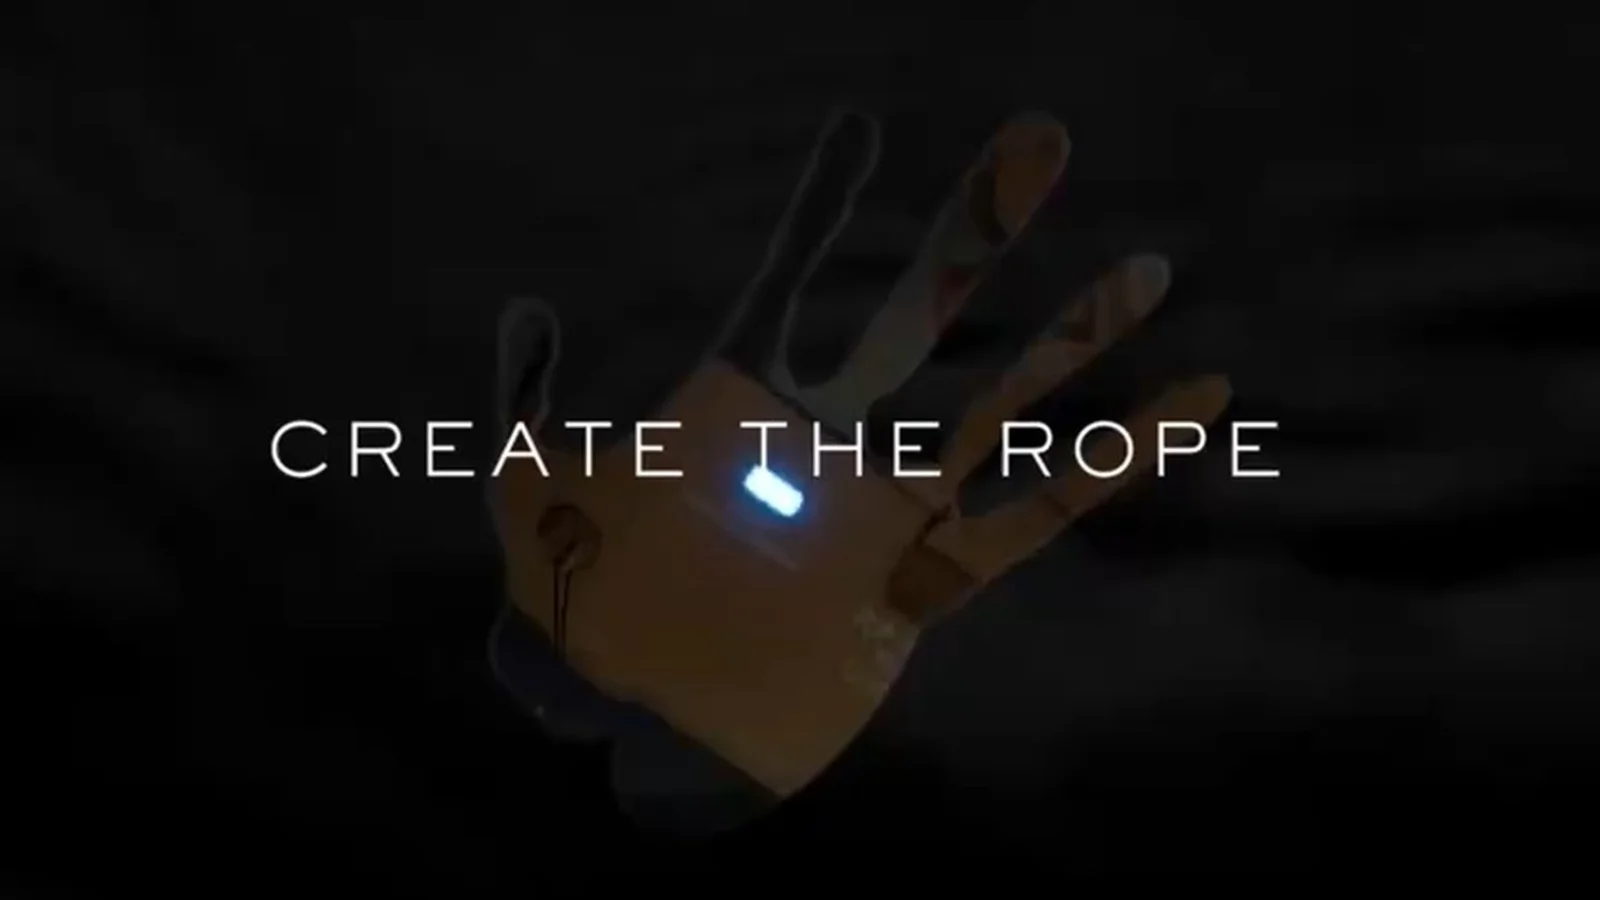 小岛秀夫公开全新《死亡搁浅》先导预告片：“CREATE THE ROPE”